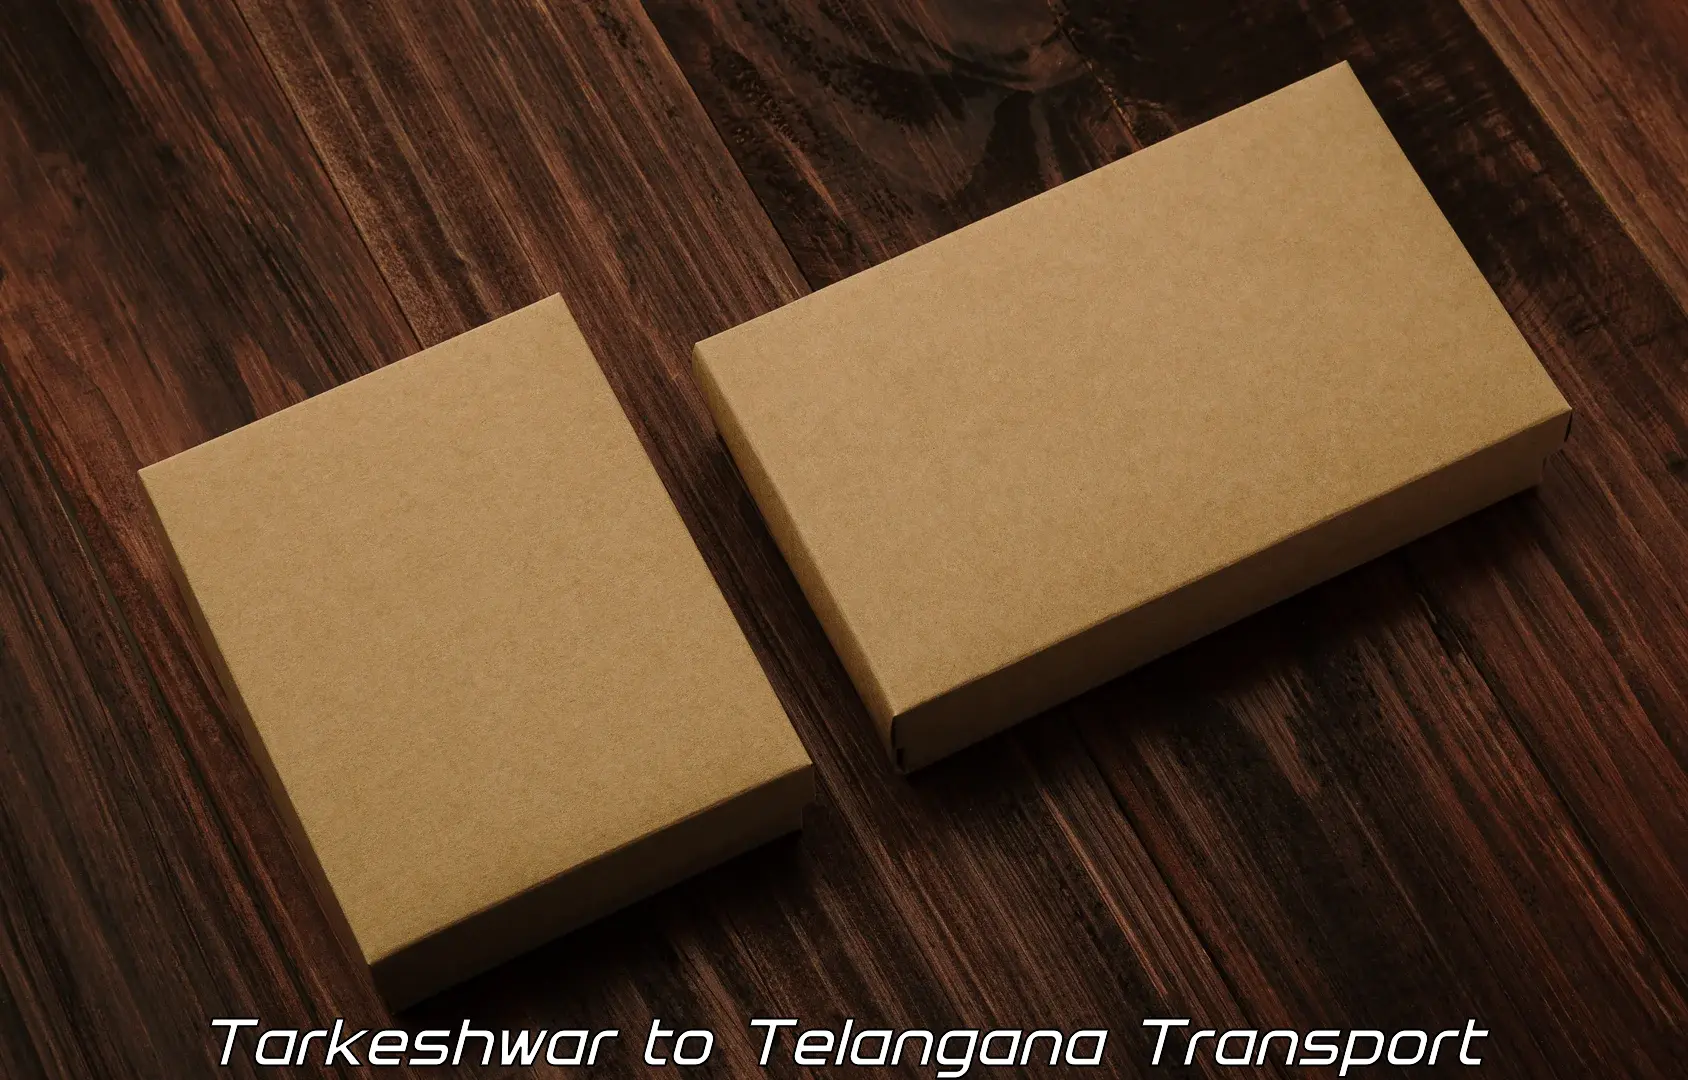 International cargo transportation services in Tarkeshwar to Kacheguda